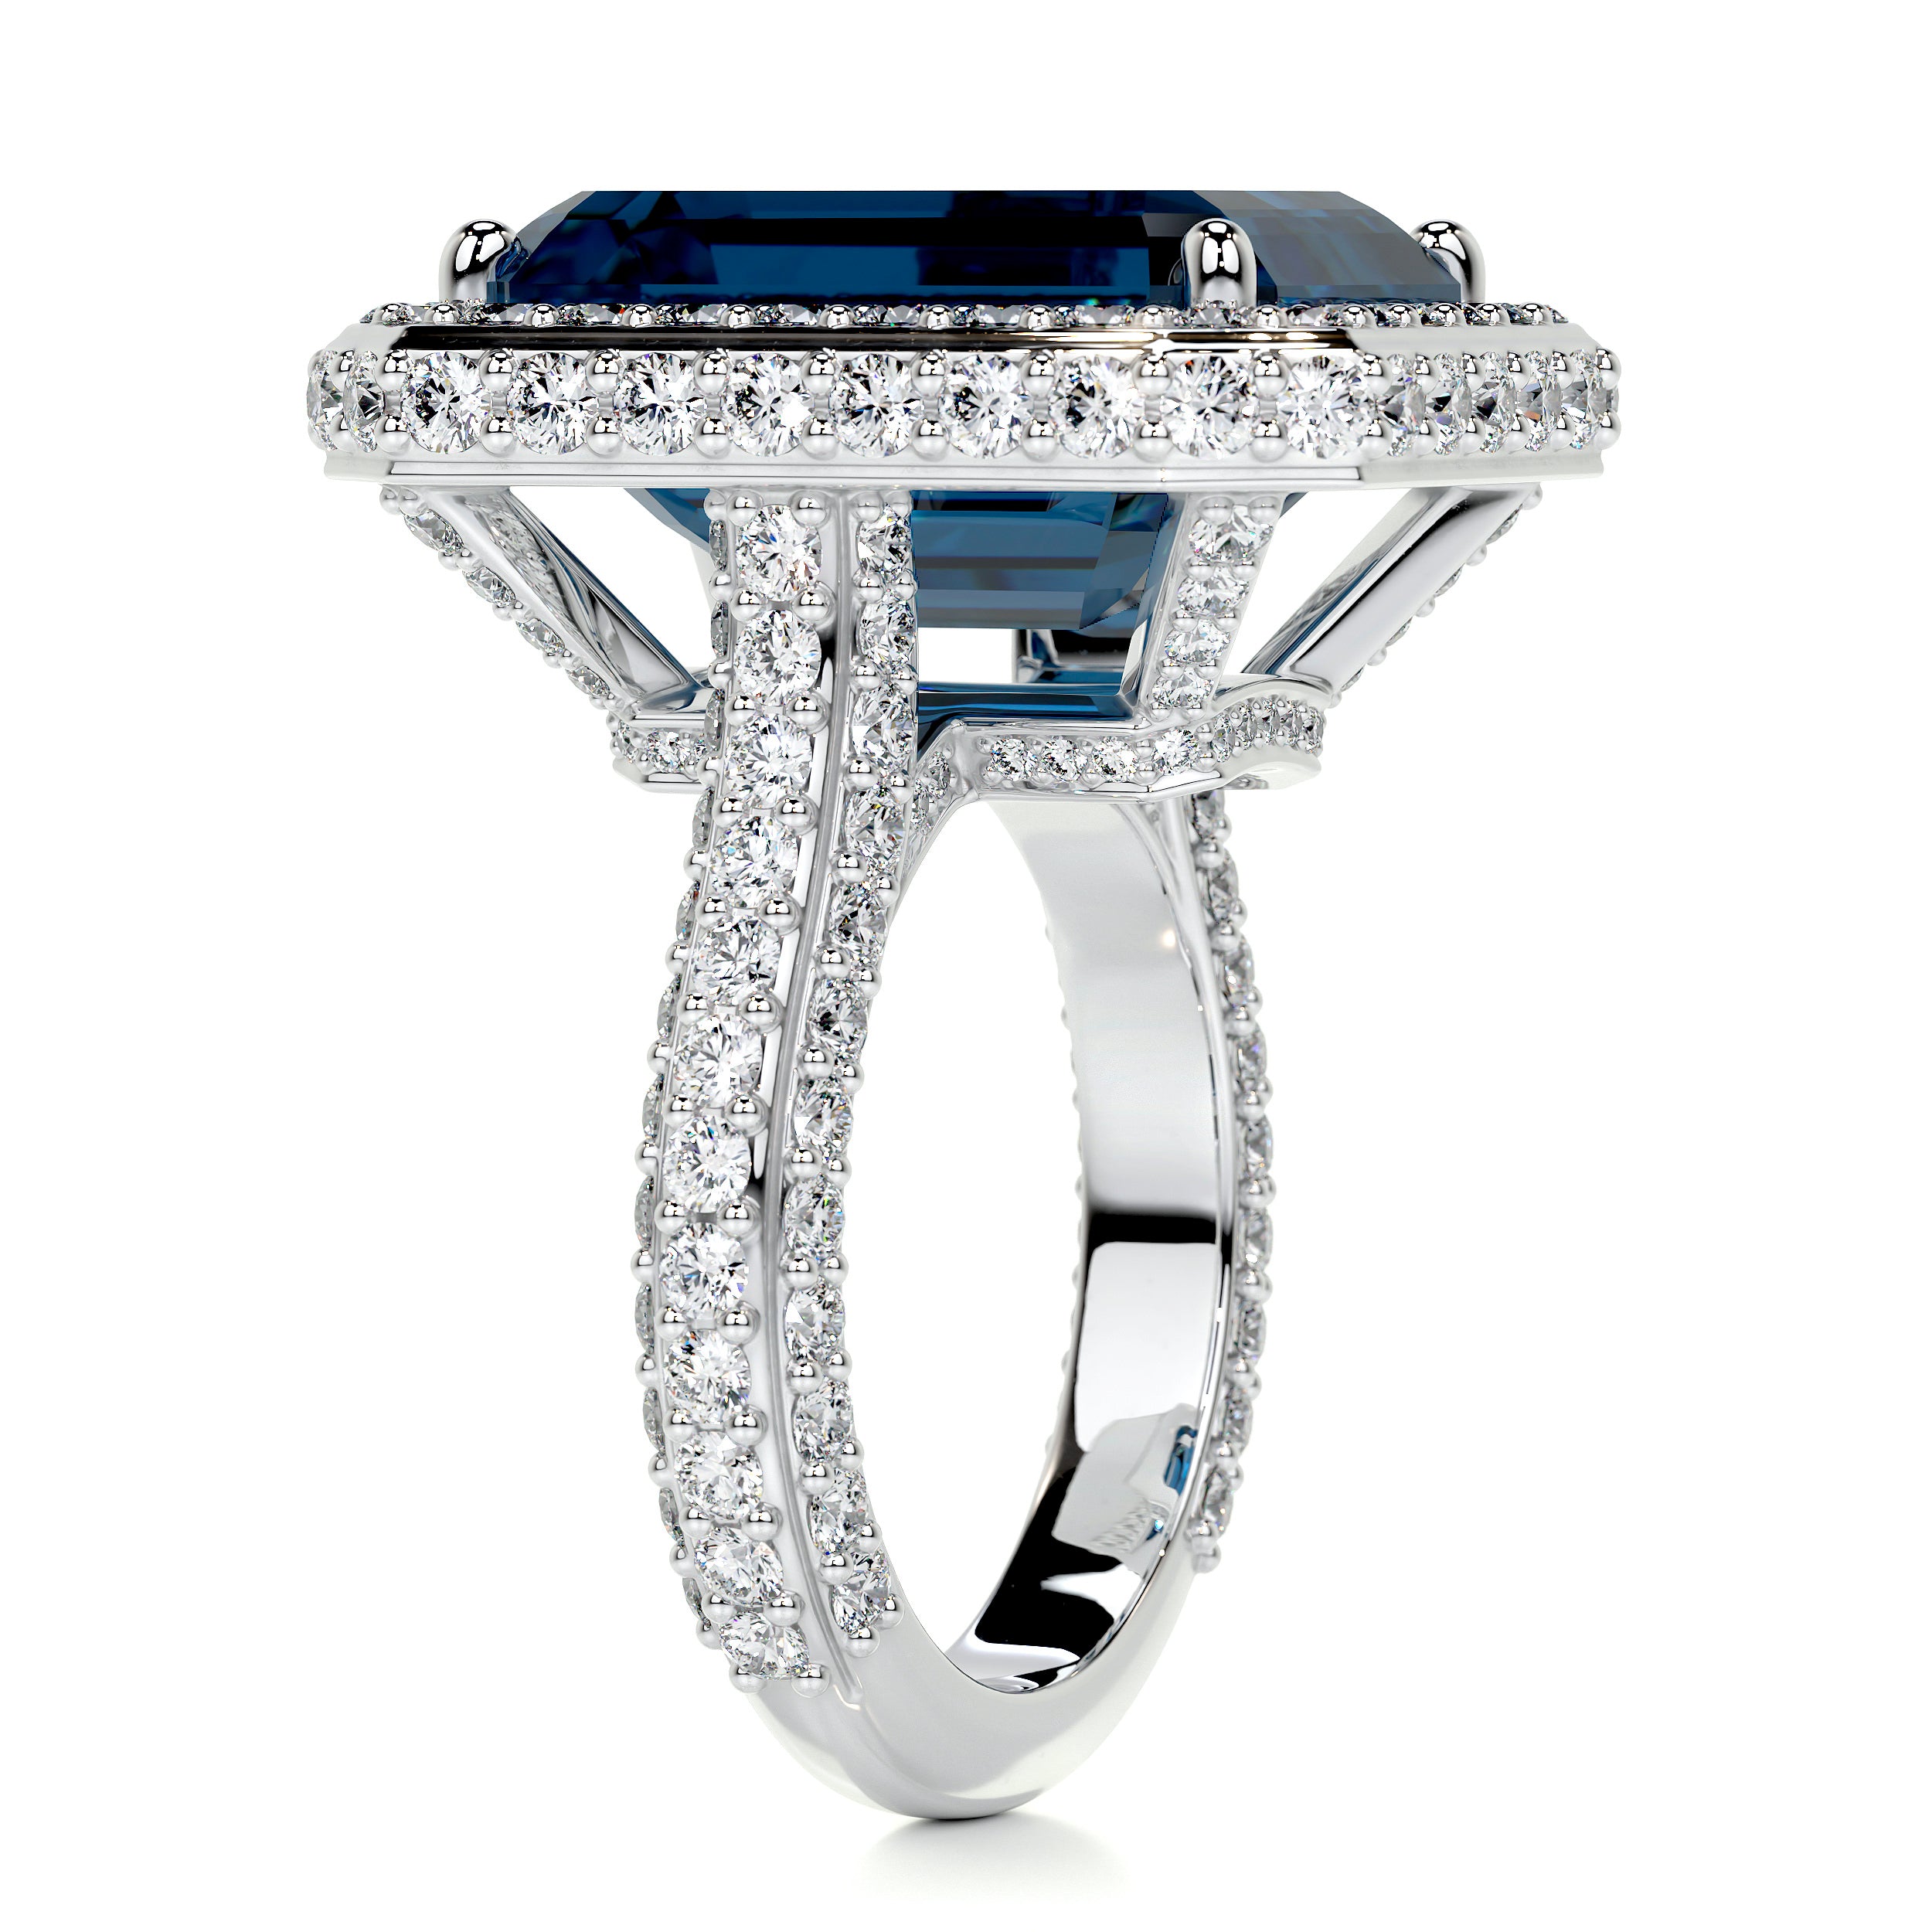 Mackenzie Gemstone & Diamonds Ring   (12 Carat) -14K White Gold